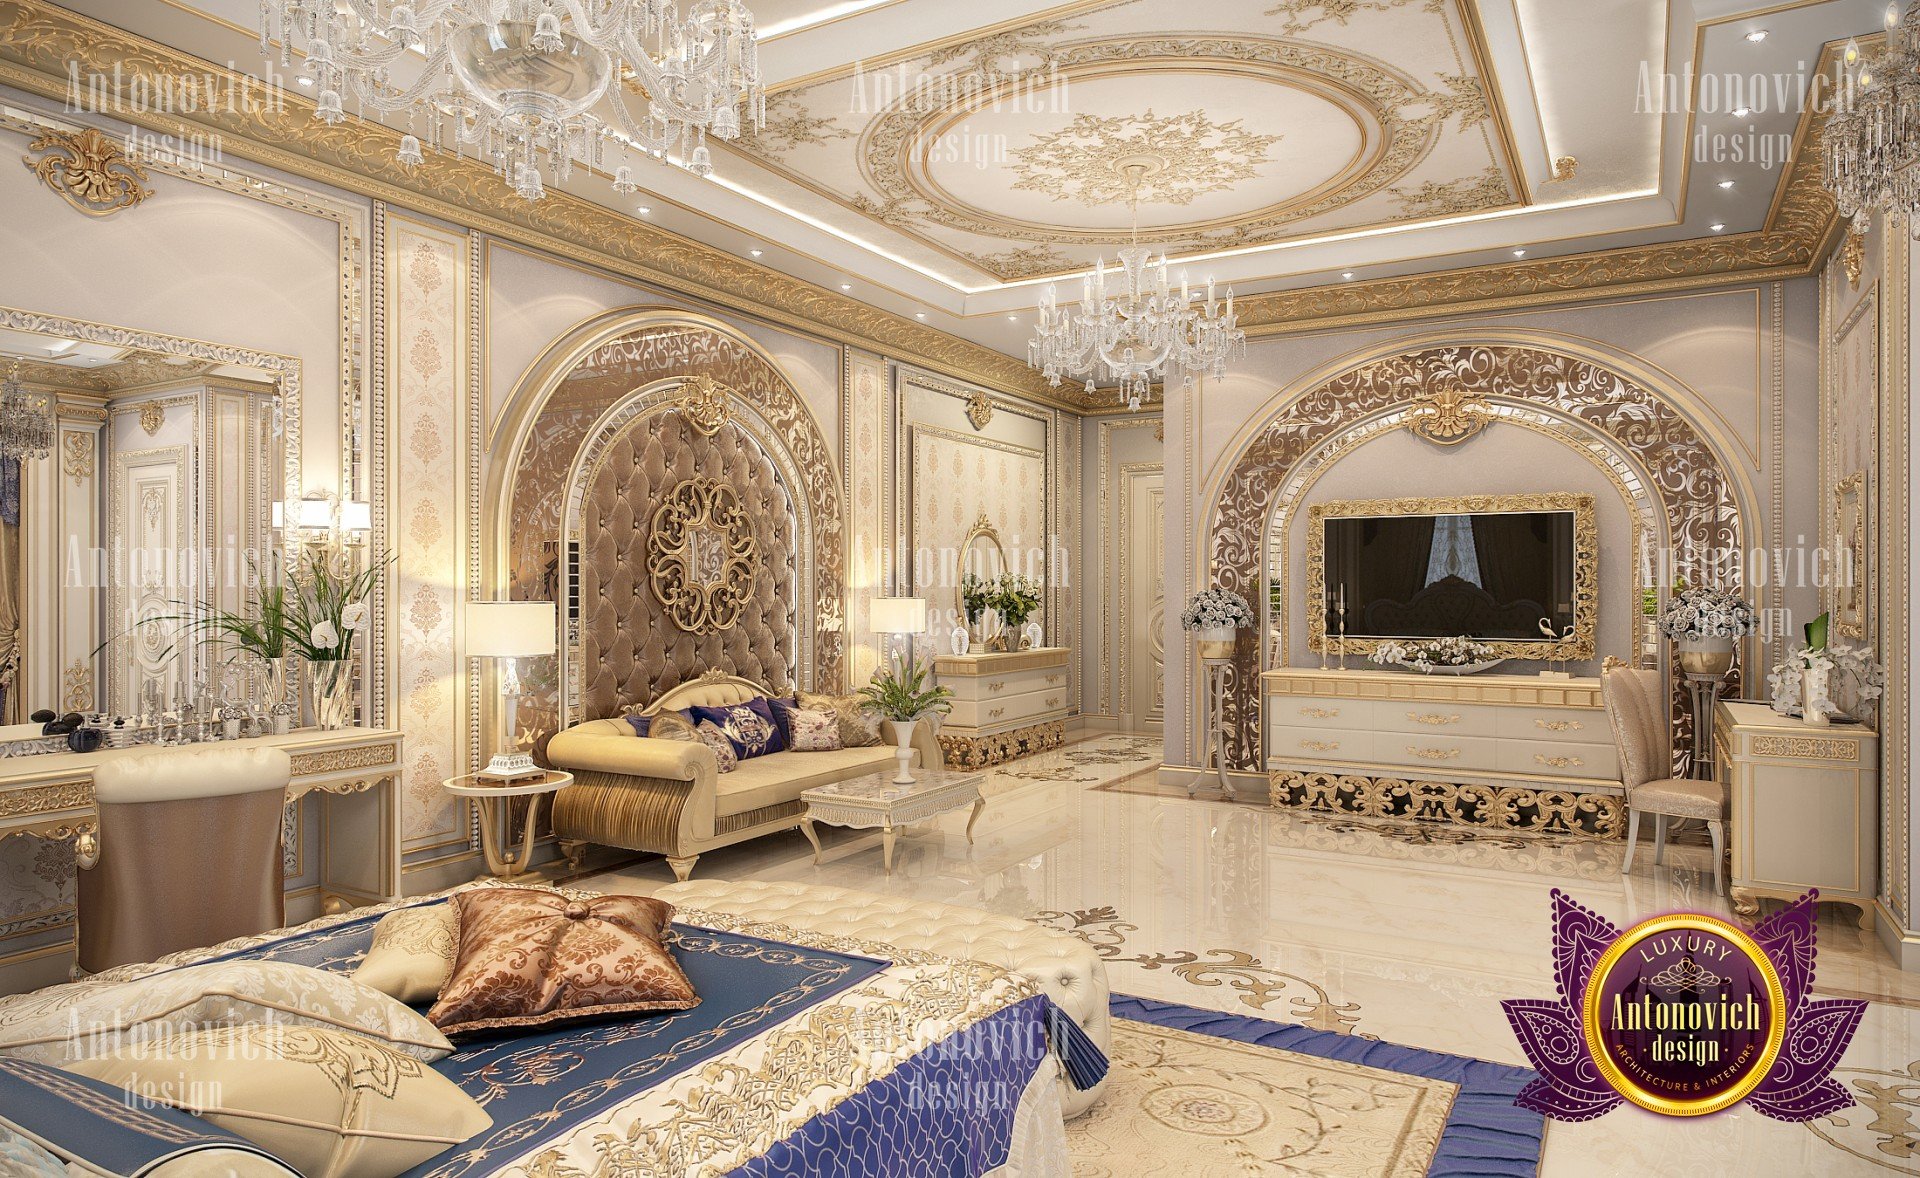 Elegant Bedroom interior design by Luxury Antonovich Desig